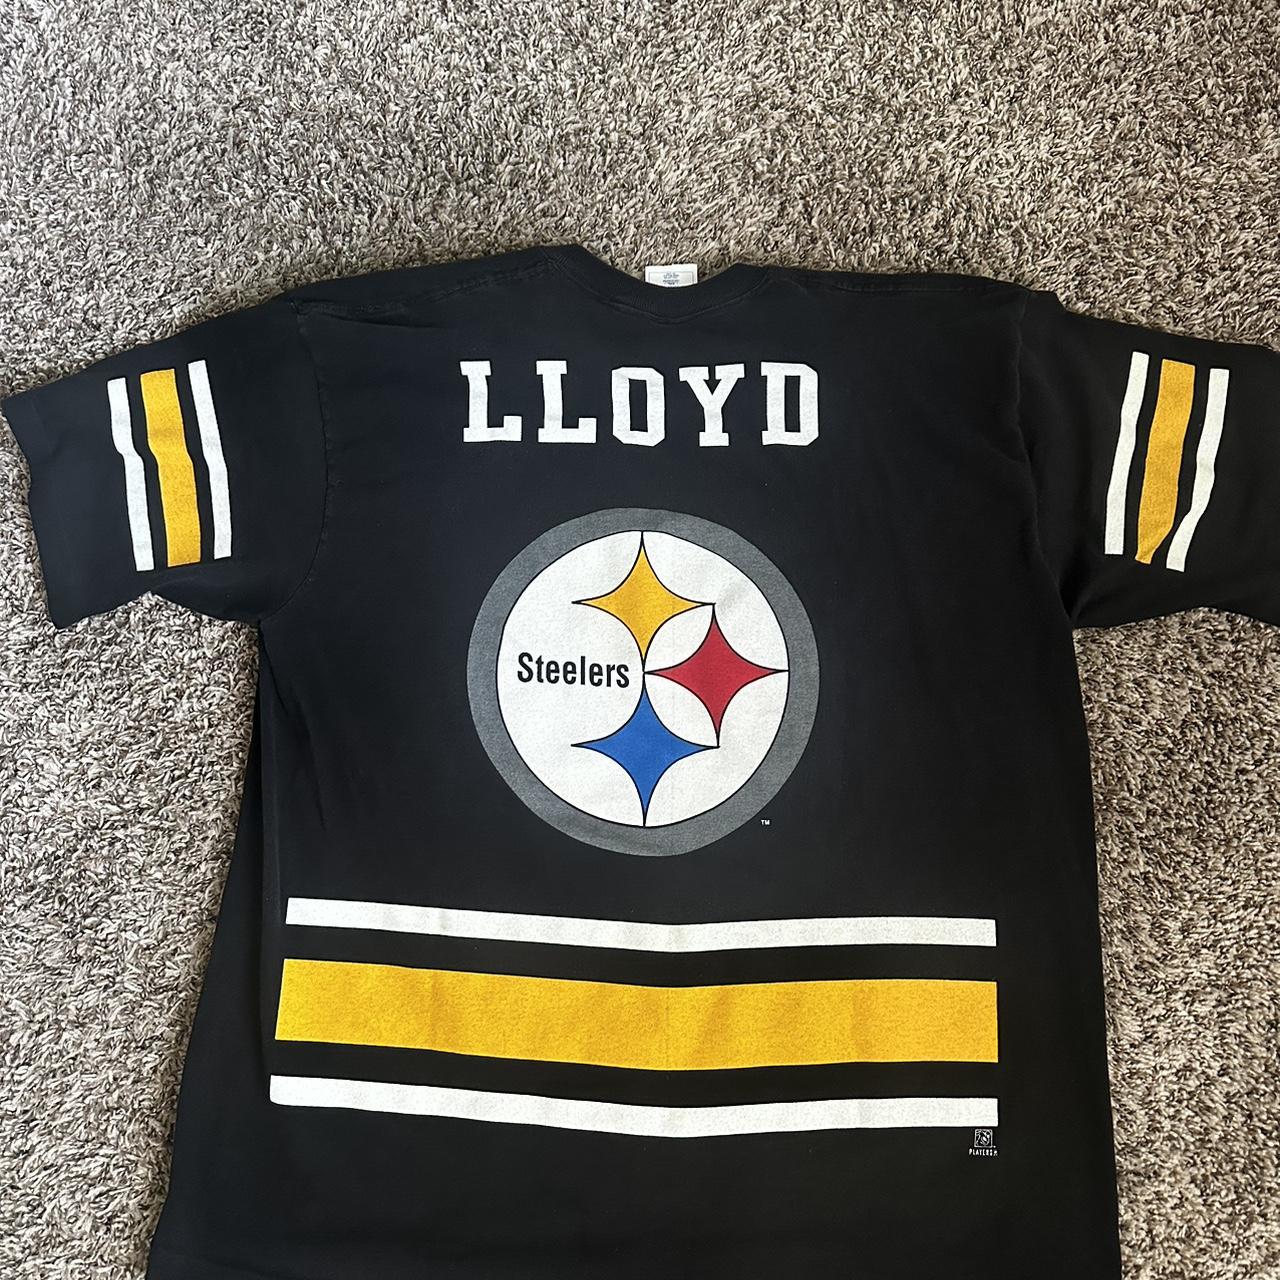 Vintage George Lloyd Steelers Shirt Pro... - Depop